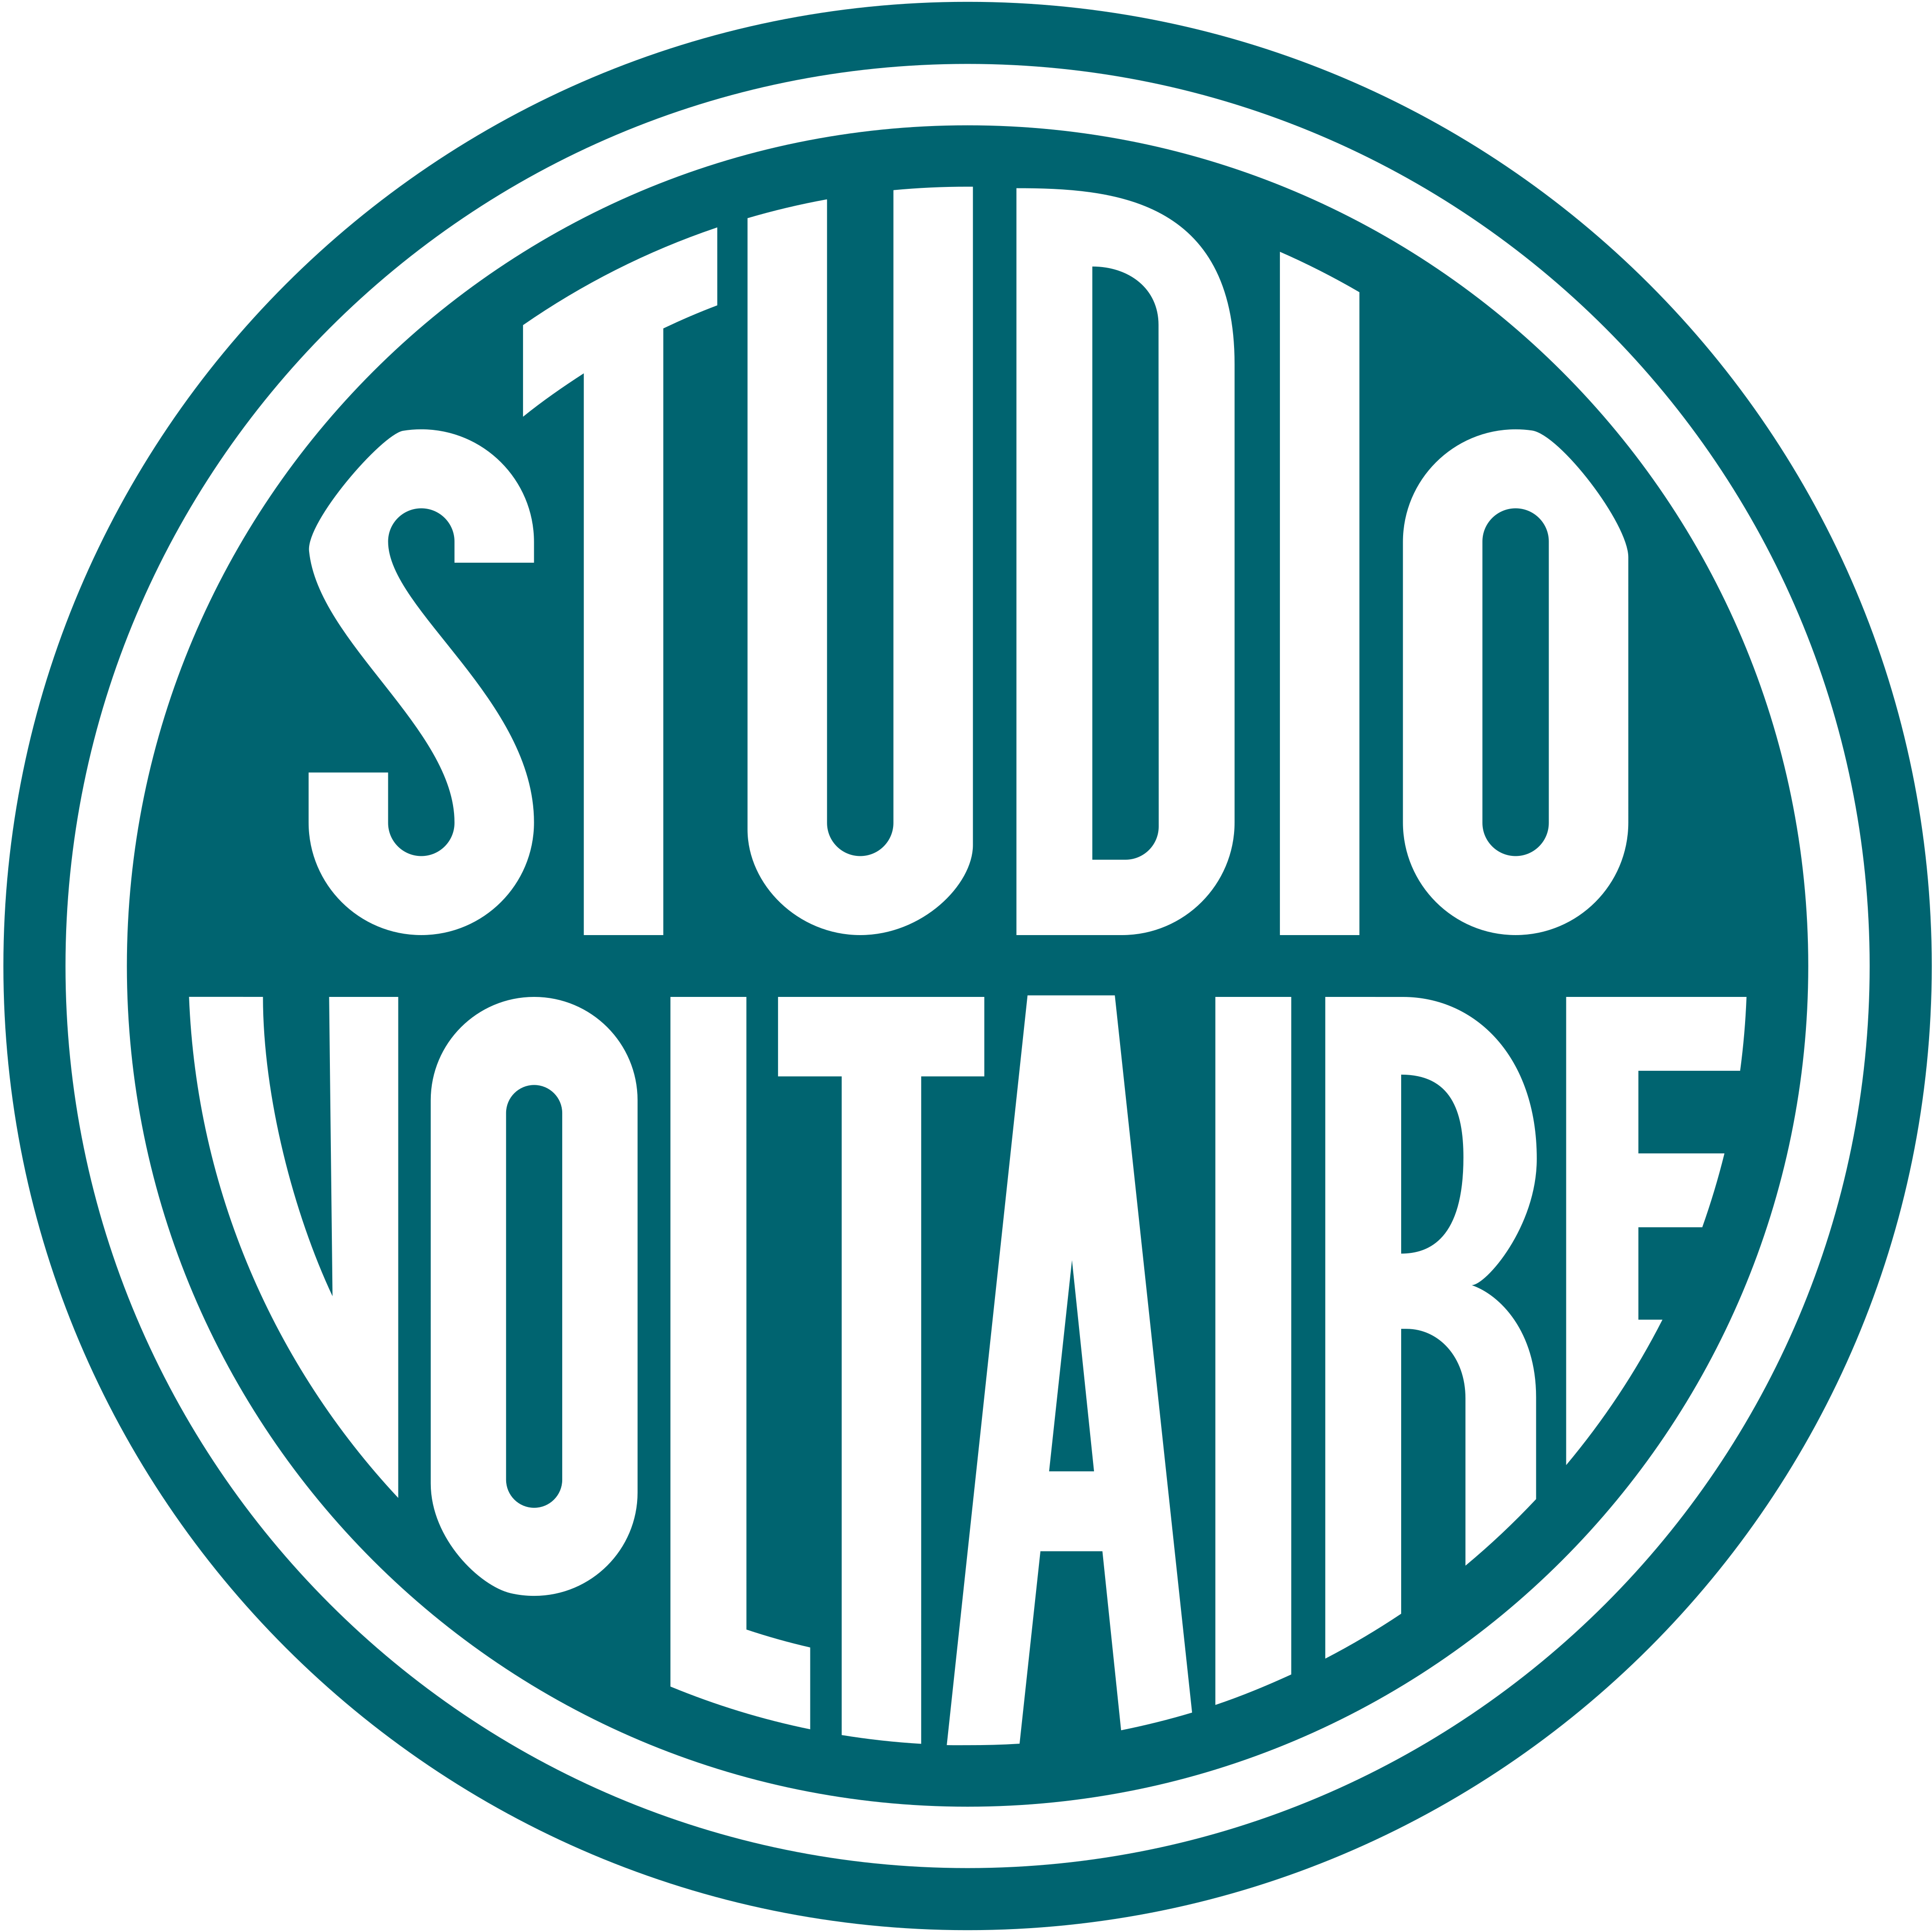 Studio Voltaire logo - download.